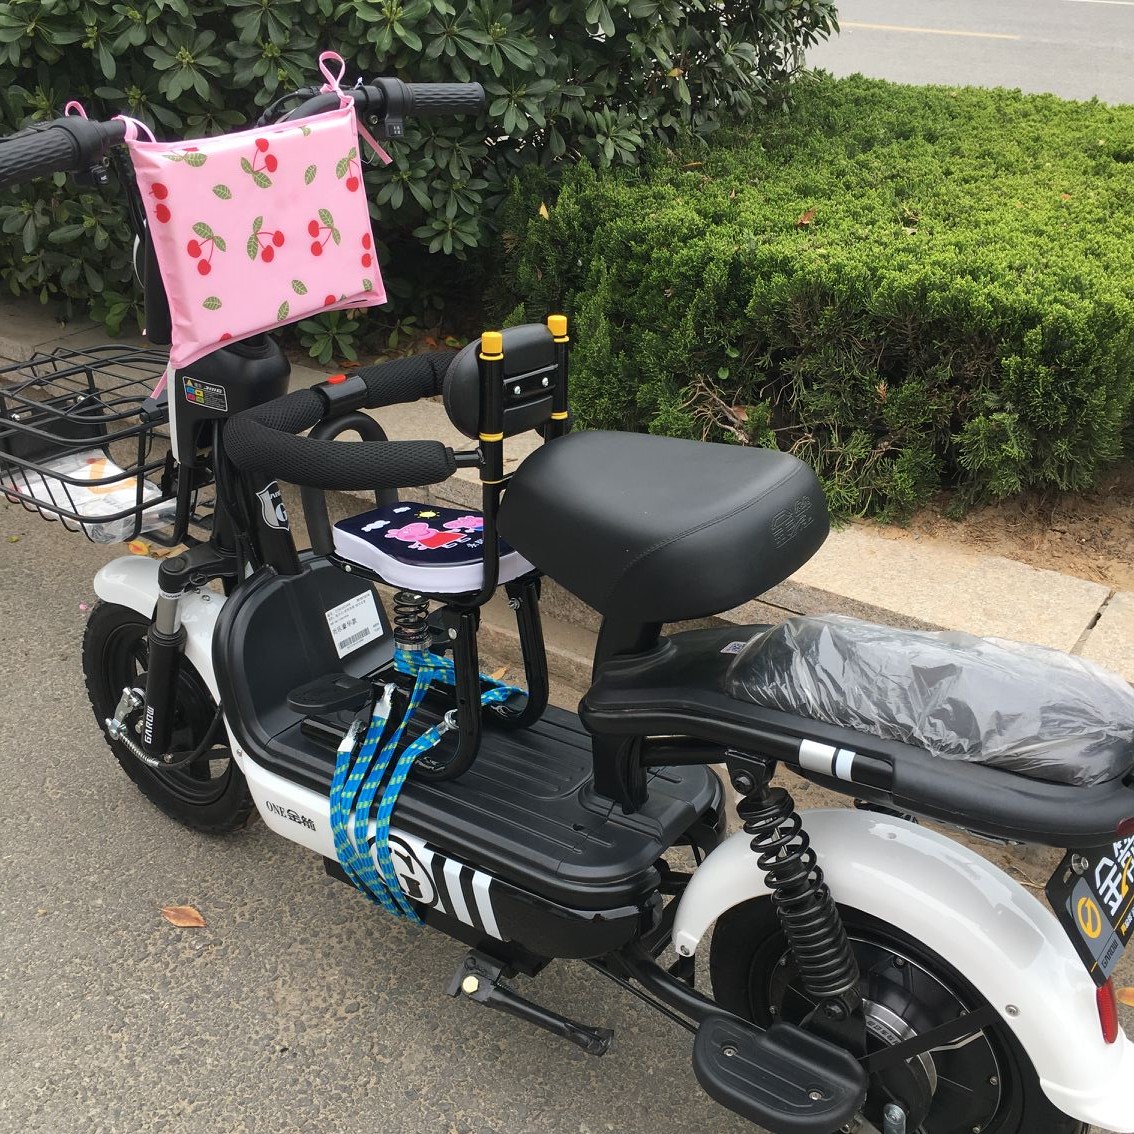 电动车儿童座椅前置婴儿小孩宝宝自行车踏板车电瓶车摩托安全坐椅